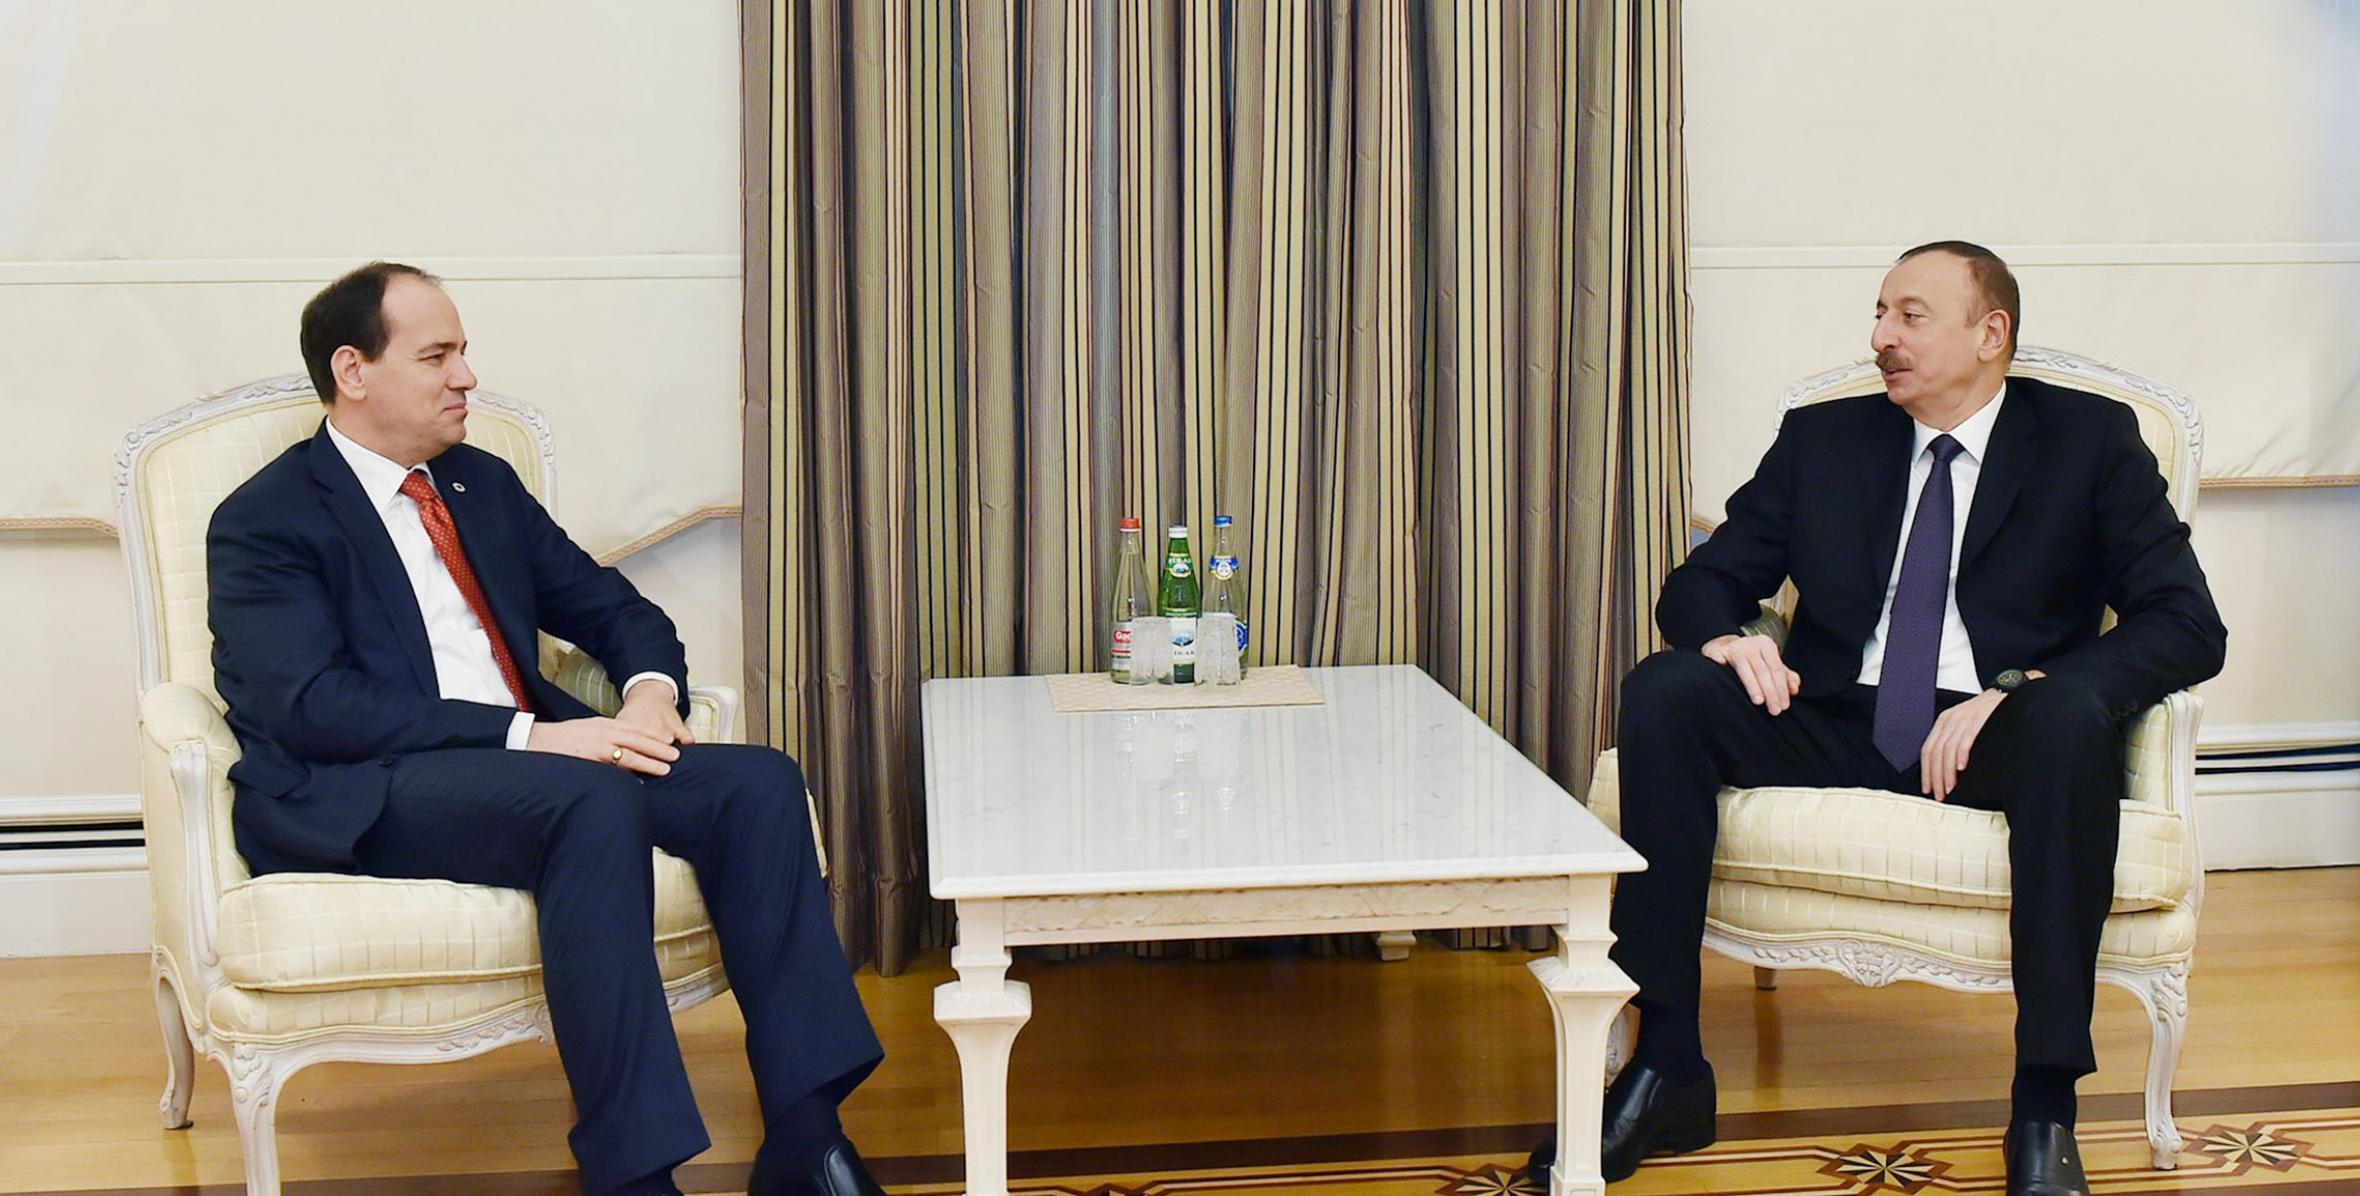 İlham Əliyev Albaniya Prezidenti Buyar Nişani ilə görüşüb